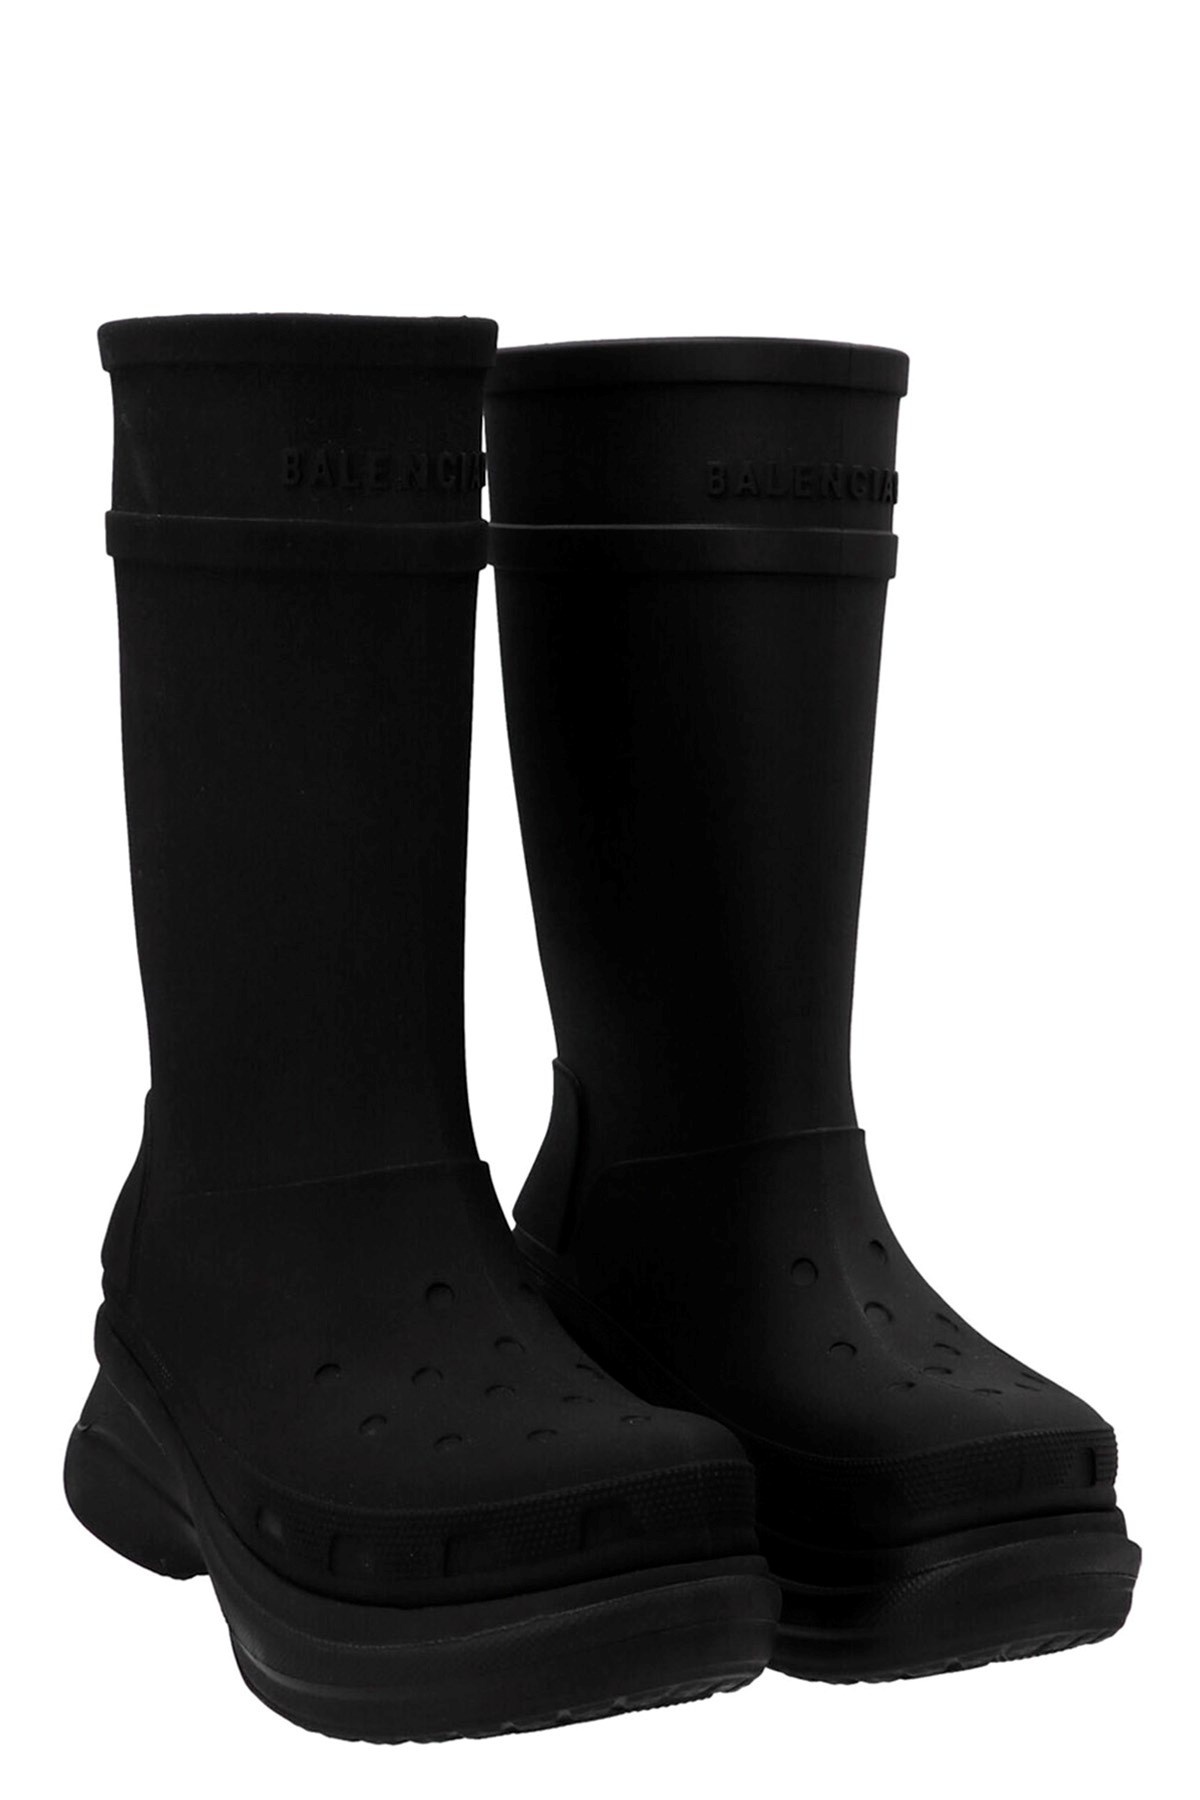 Balenciaga x Crocs boots - 2